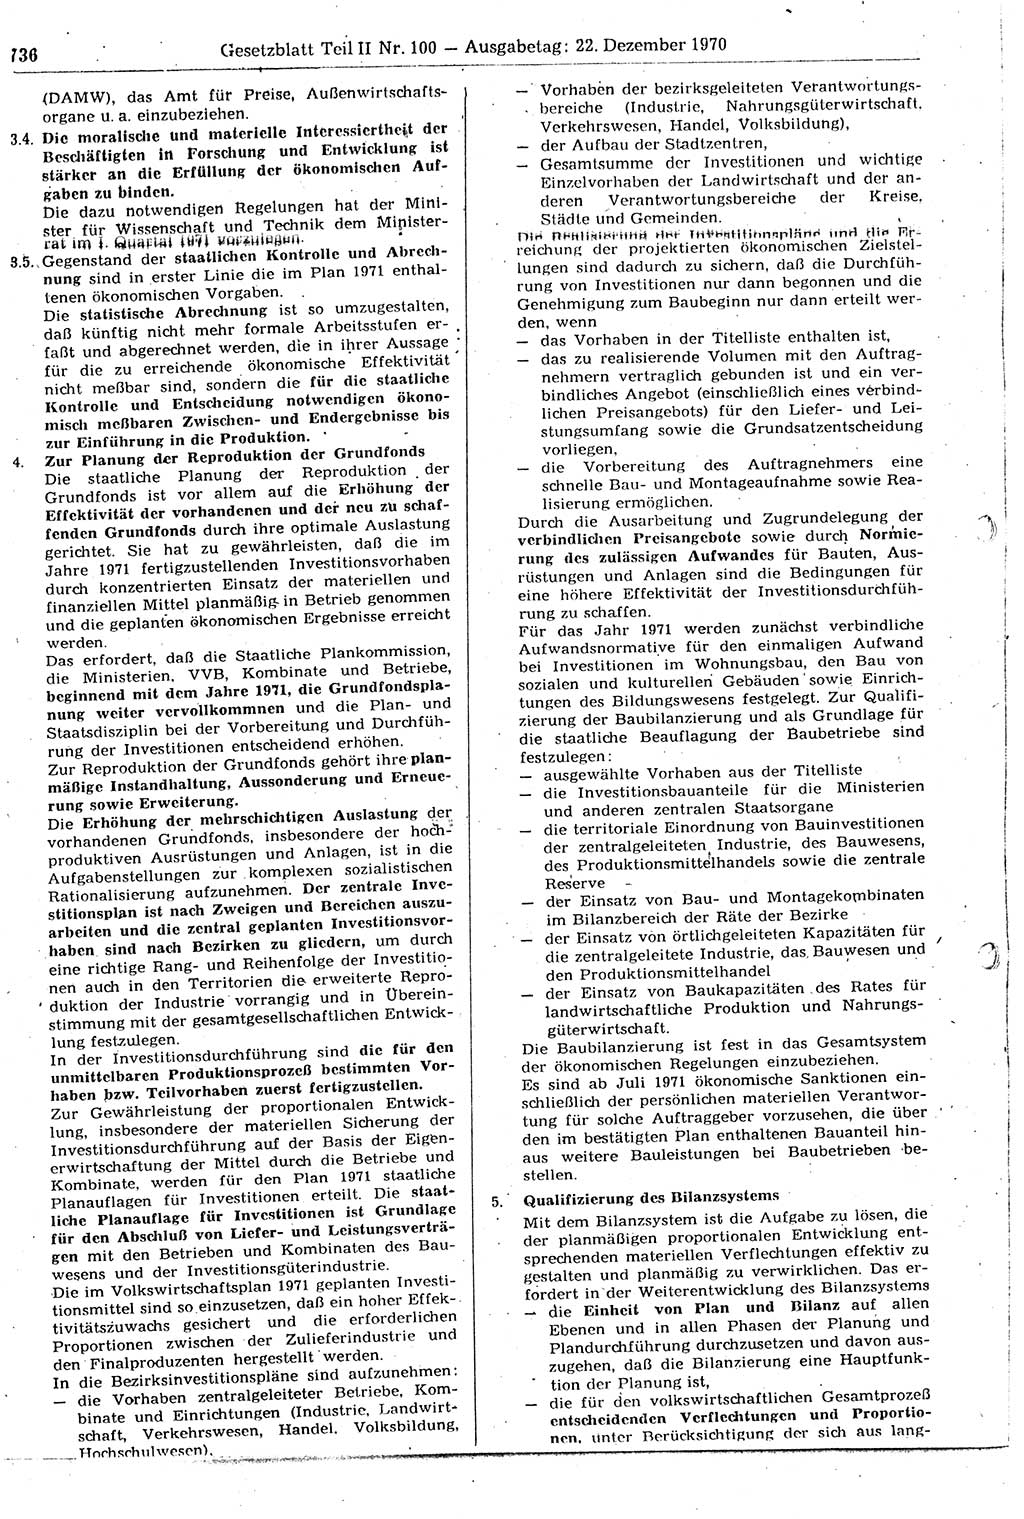 Gesetzblatt (GBl.) der Deutschen Demokratischen Republik (DDR) Teil ⅠⅠ 1970, Seite 736 (GBl. DDR ⅠⅠ 1970, S. 736)